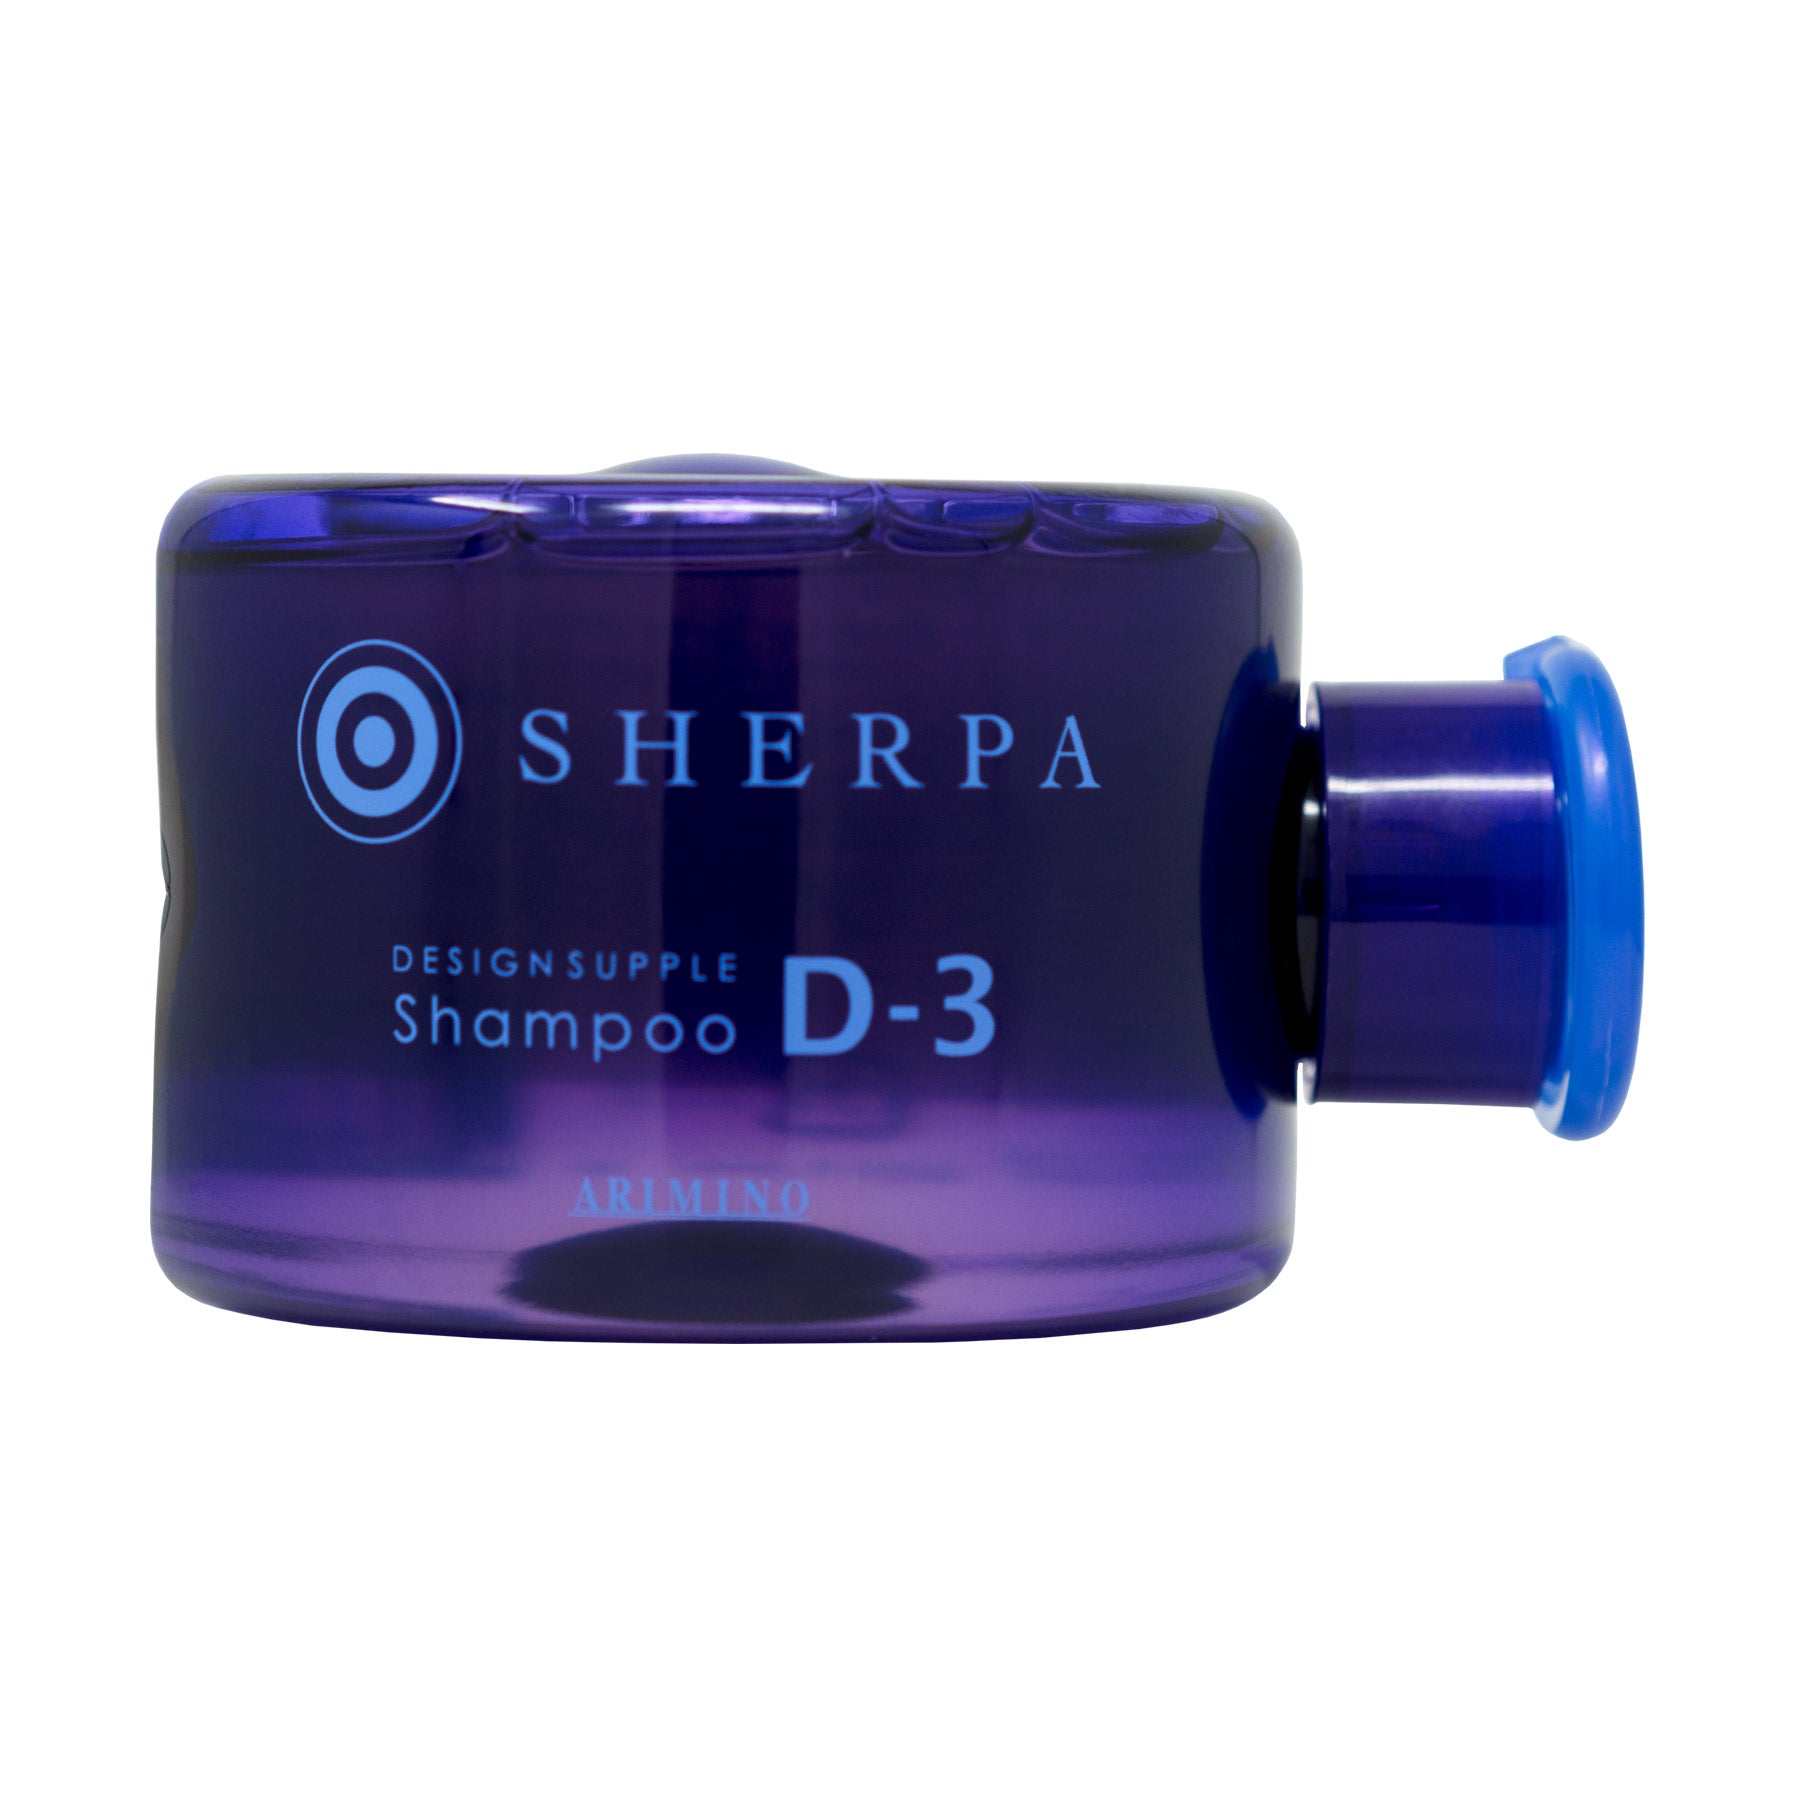 Sherpa Design Supple Shampoo D-3